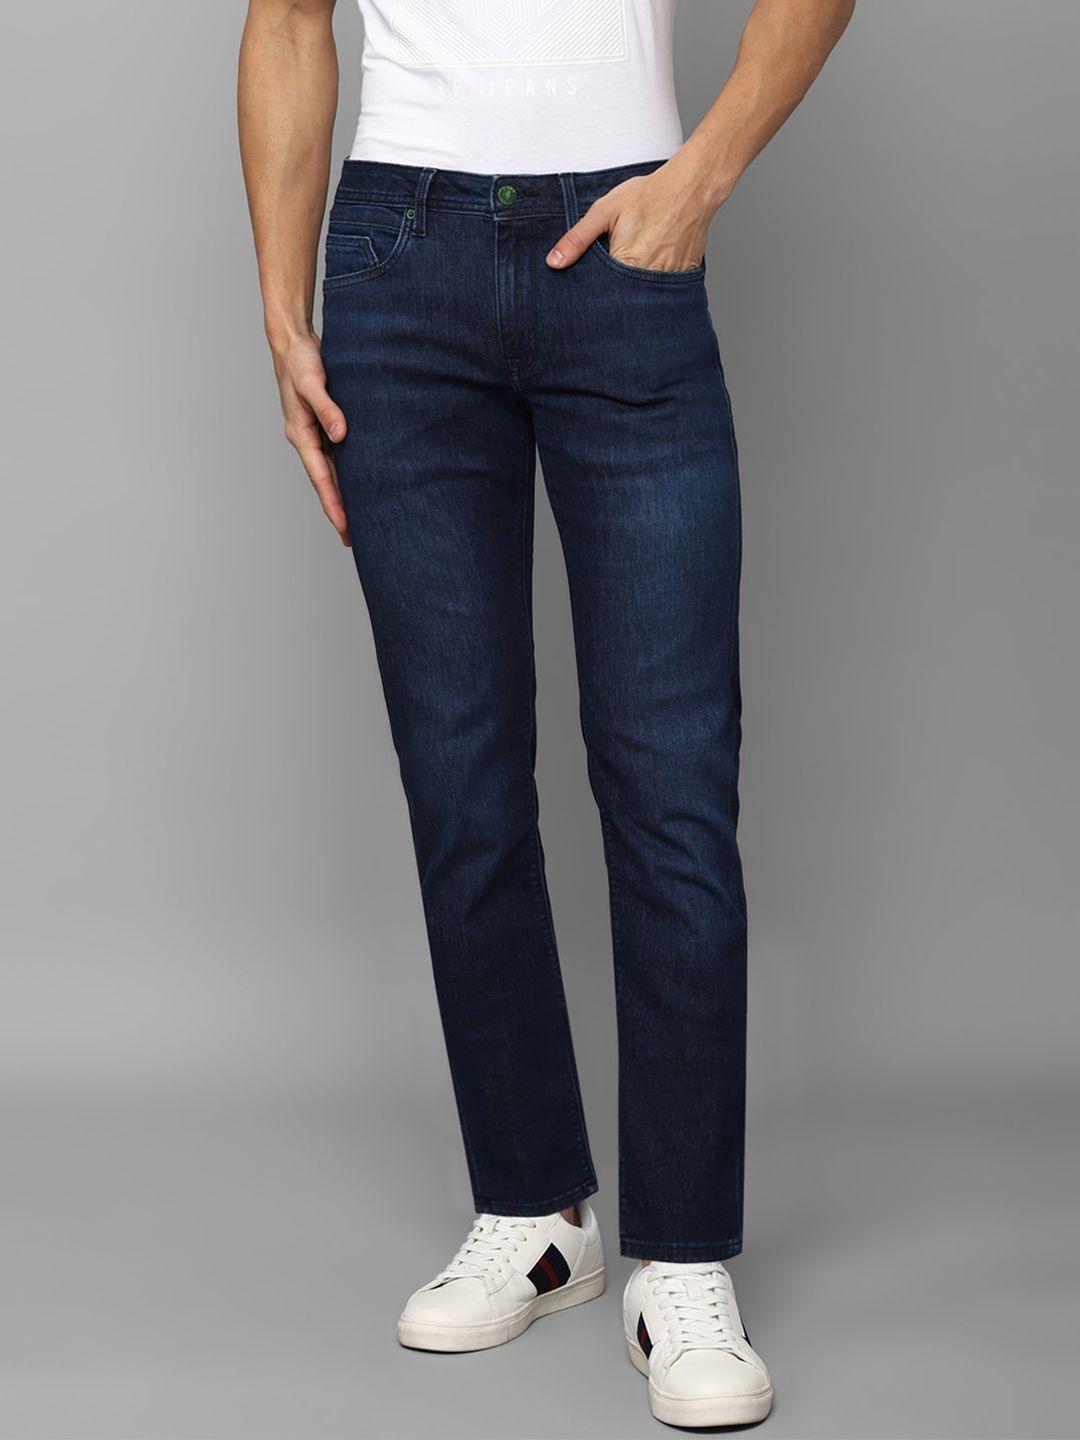 louis philippe jeans men slim fit light fade cotton jeans